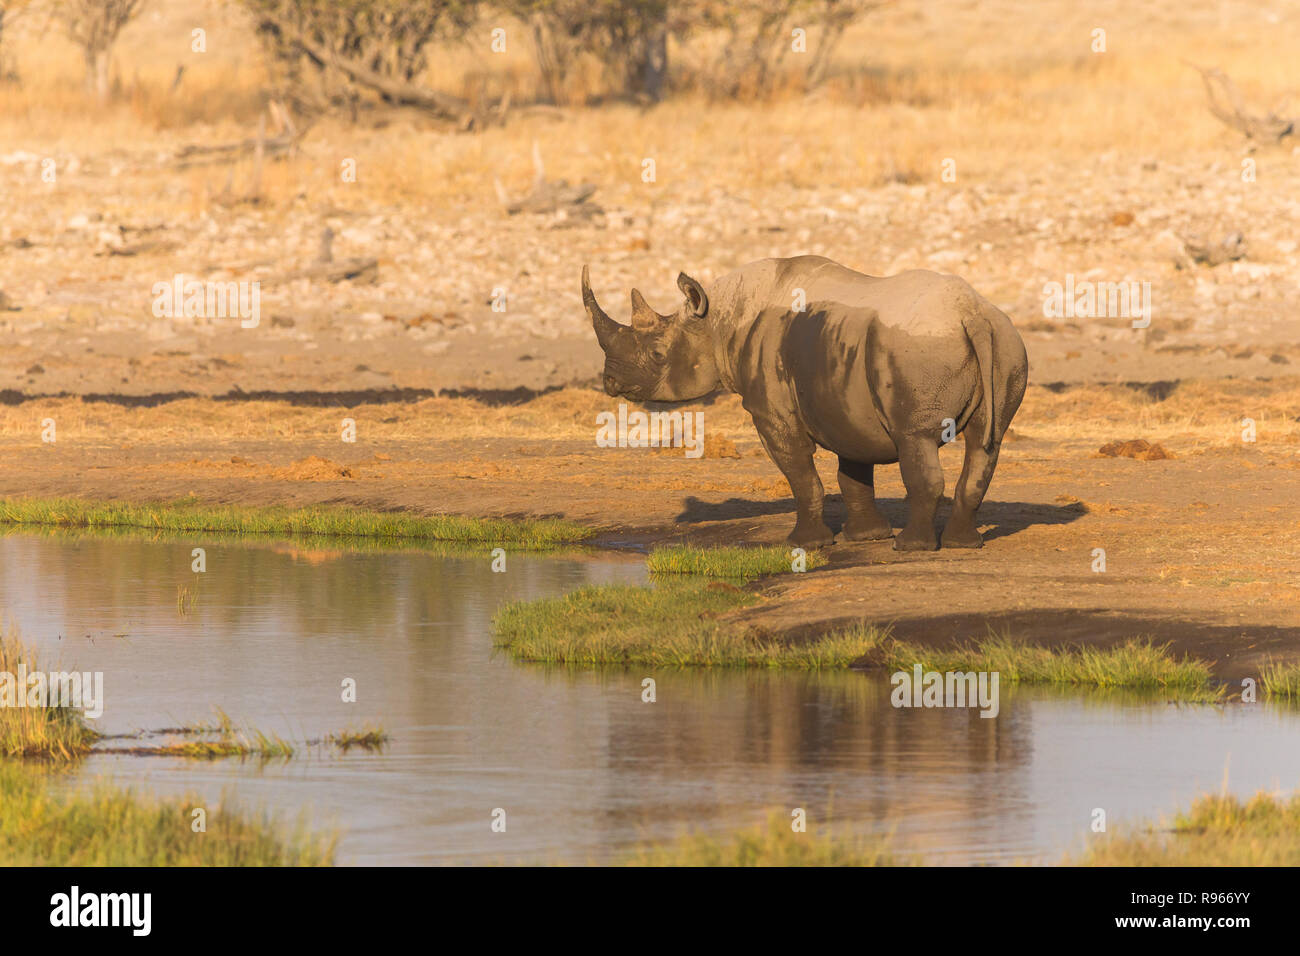 White Rhino o rinoceronte cubierto de barro, se encuentra junto al orificio de agua o abrevadero en la sabana en el Parque Nacional Etosha, en Namibia Foto de stock